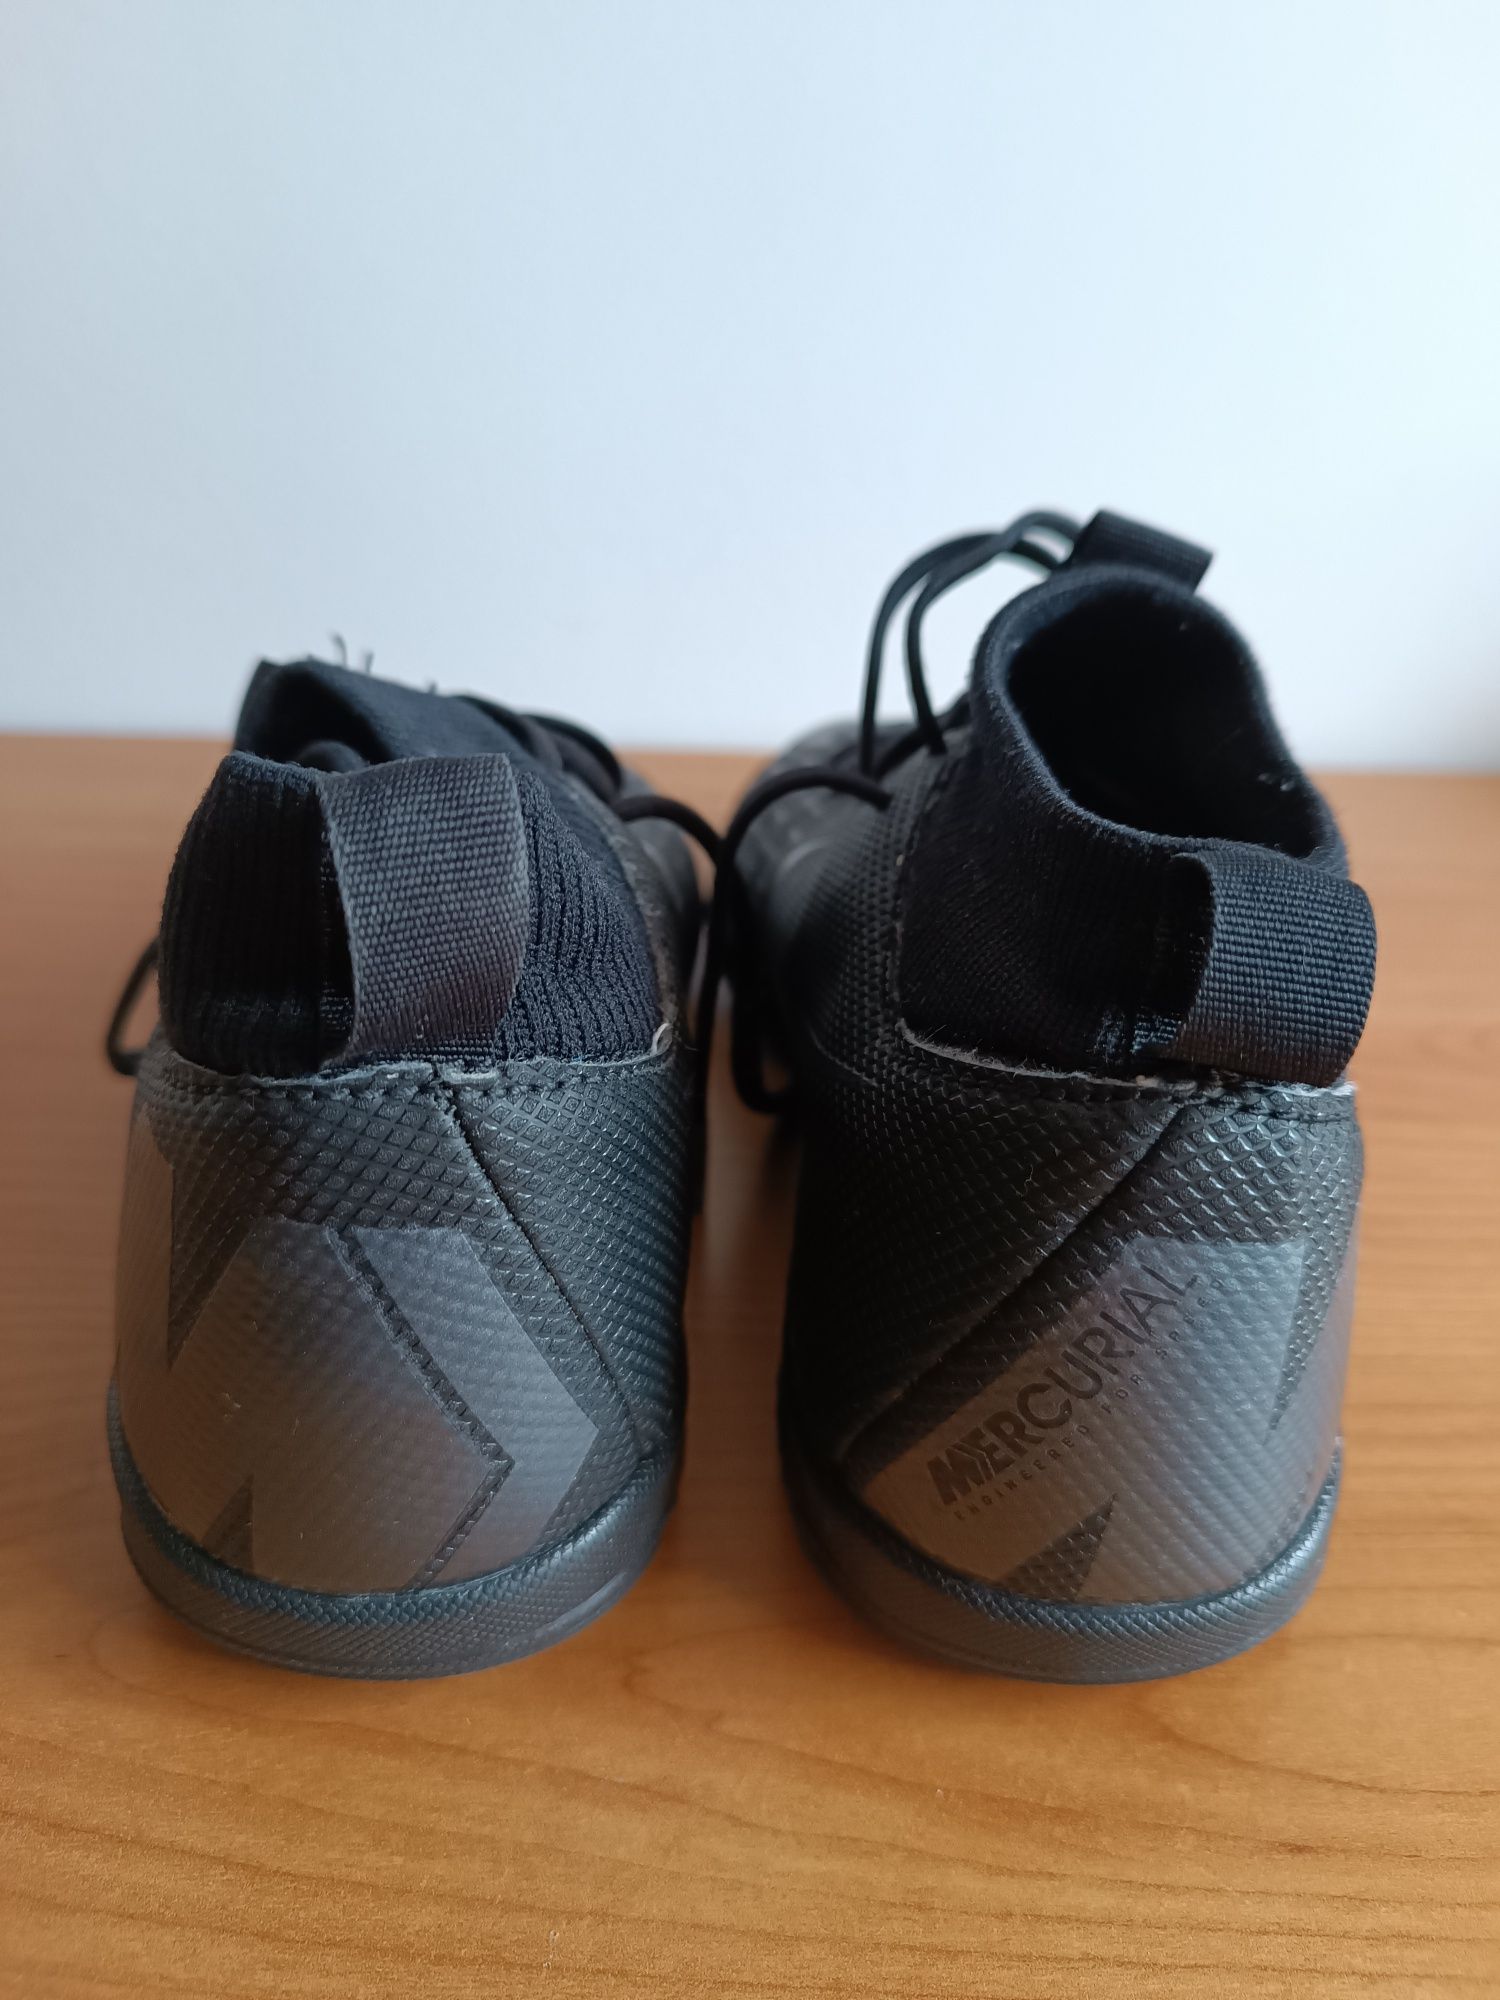 Adidas Mercurial buty piłkarskie halówki rozmiar 35